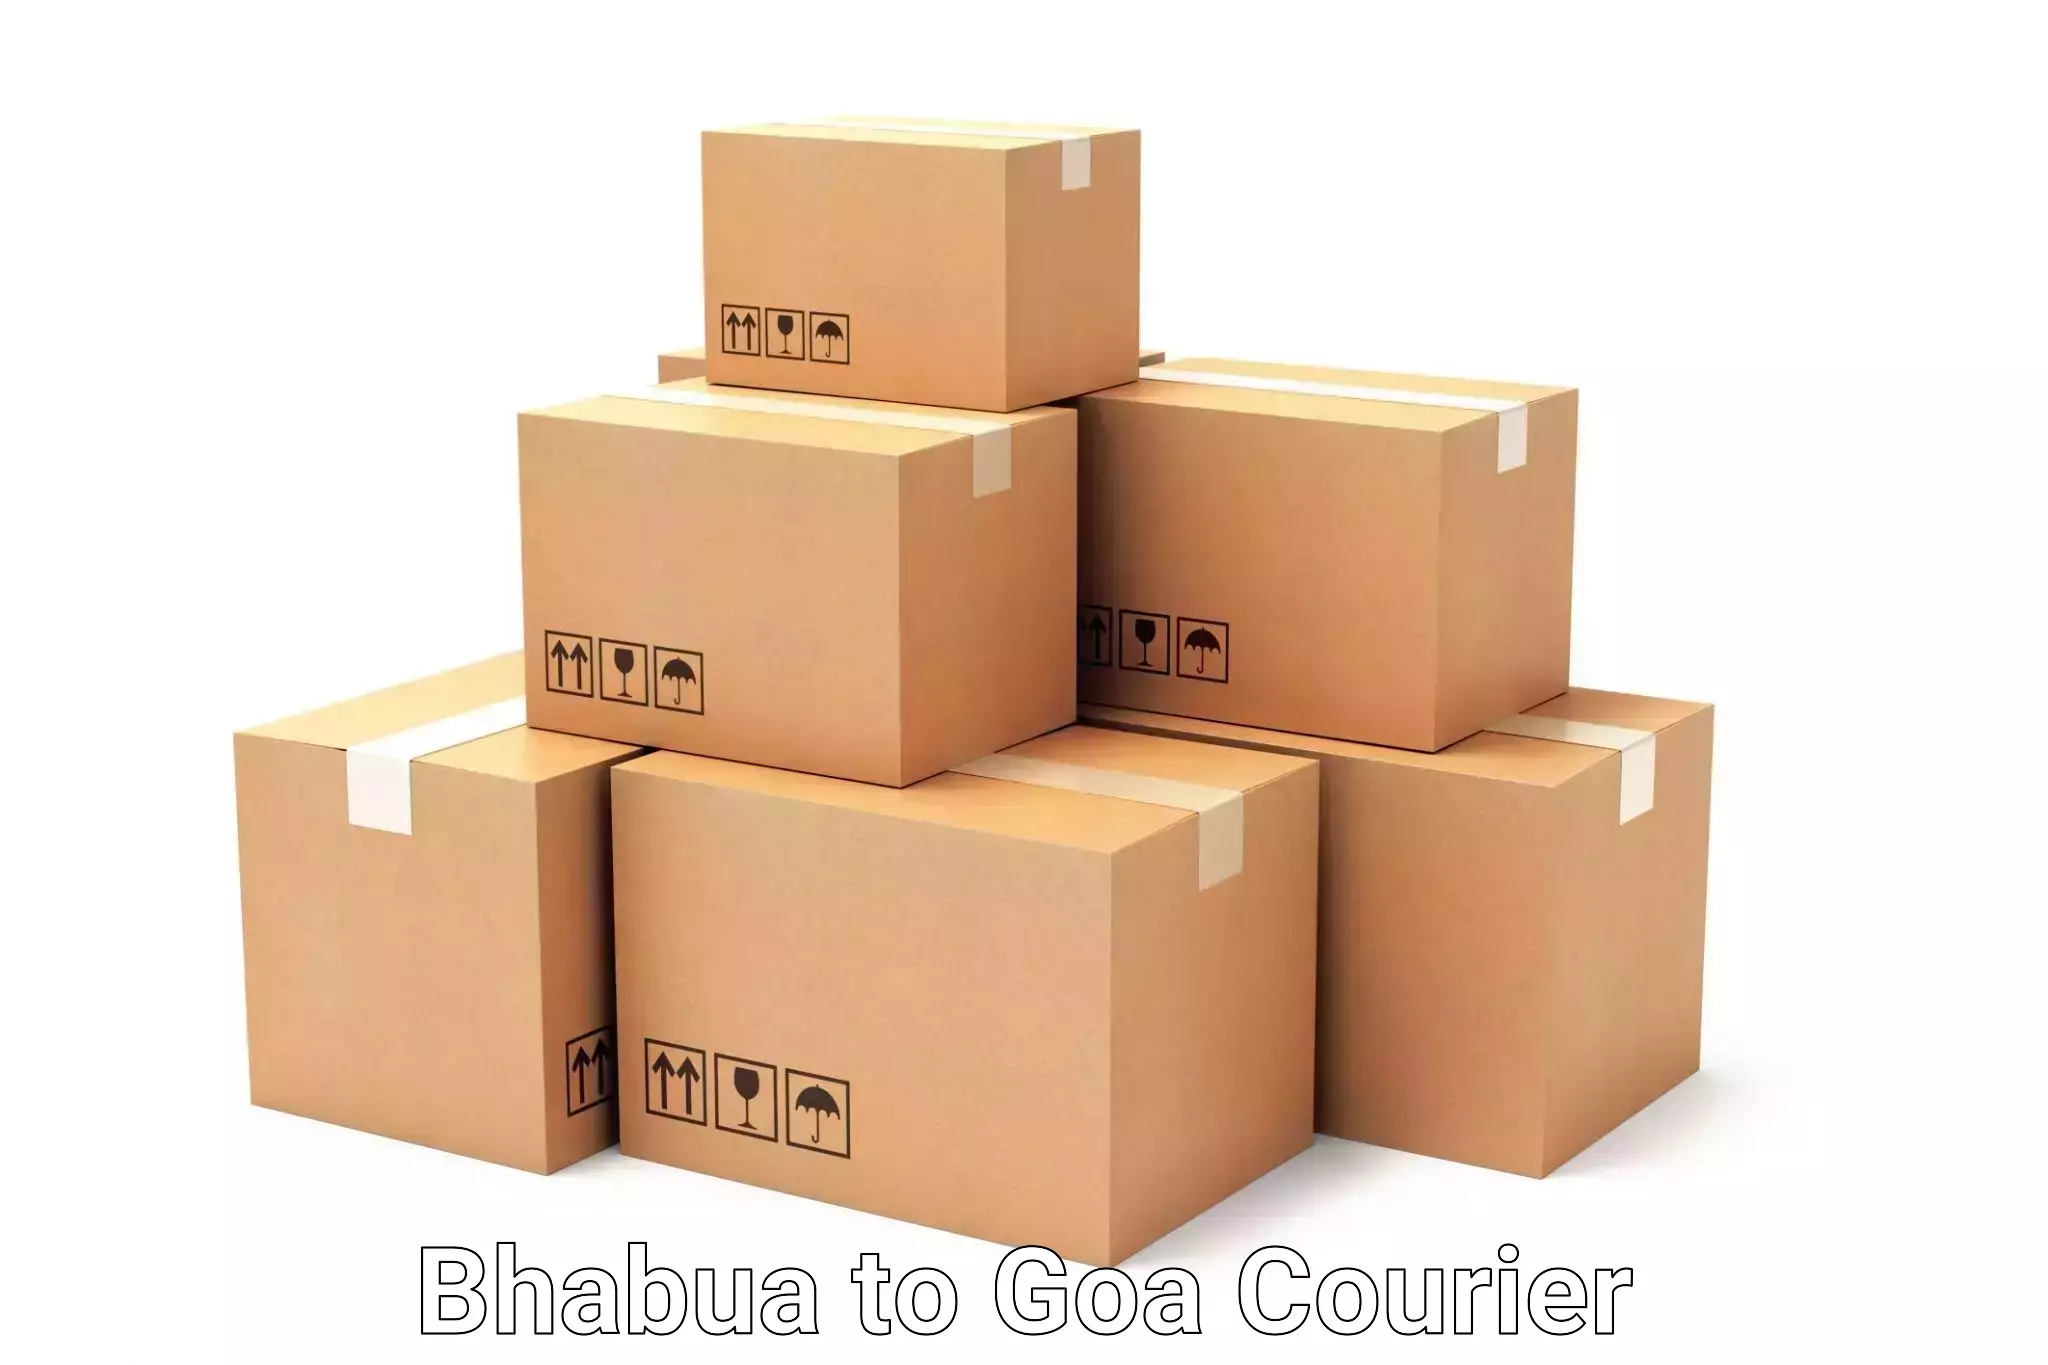 Domestic luggage transport Bhabua to Goa